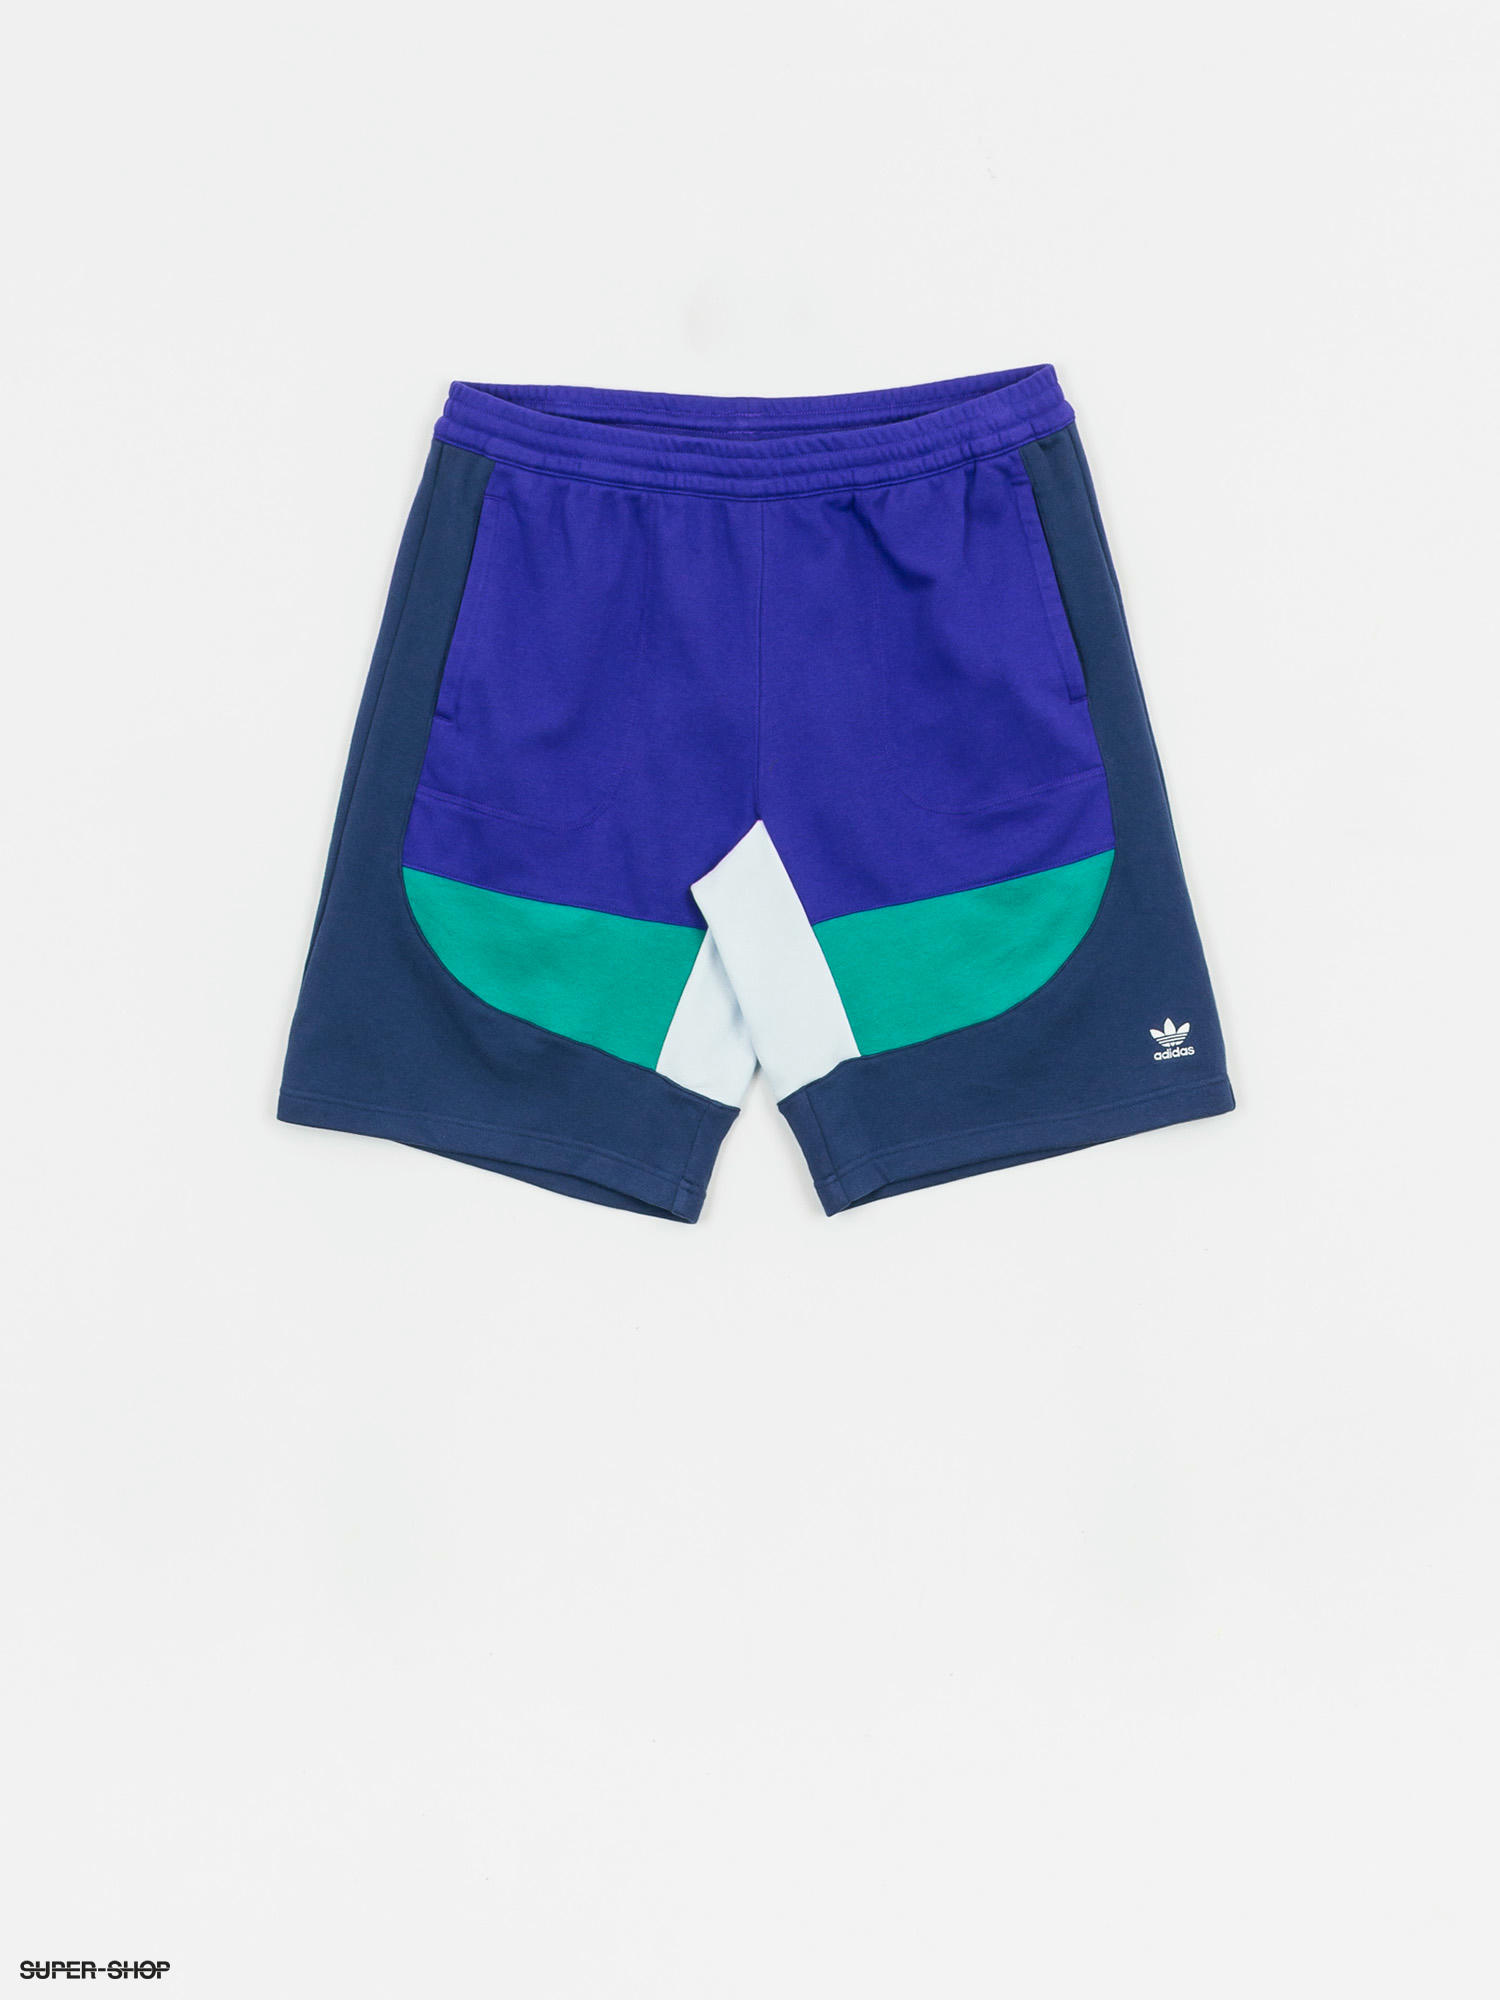 adidas pt3 shorts